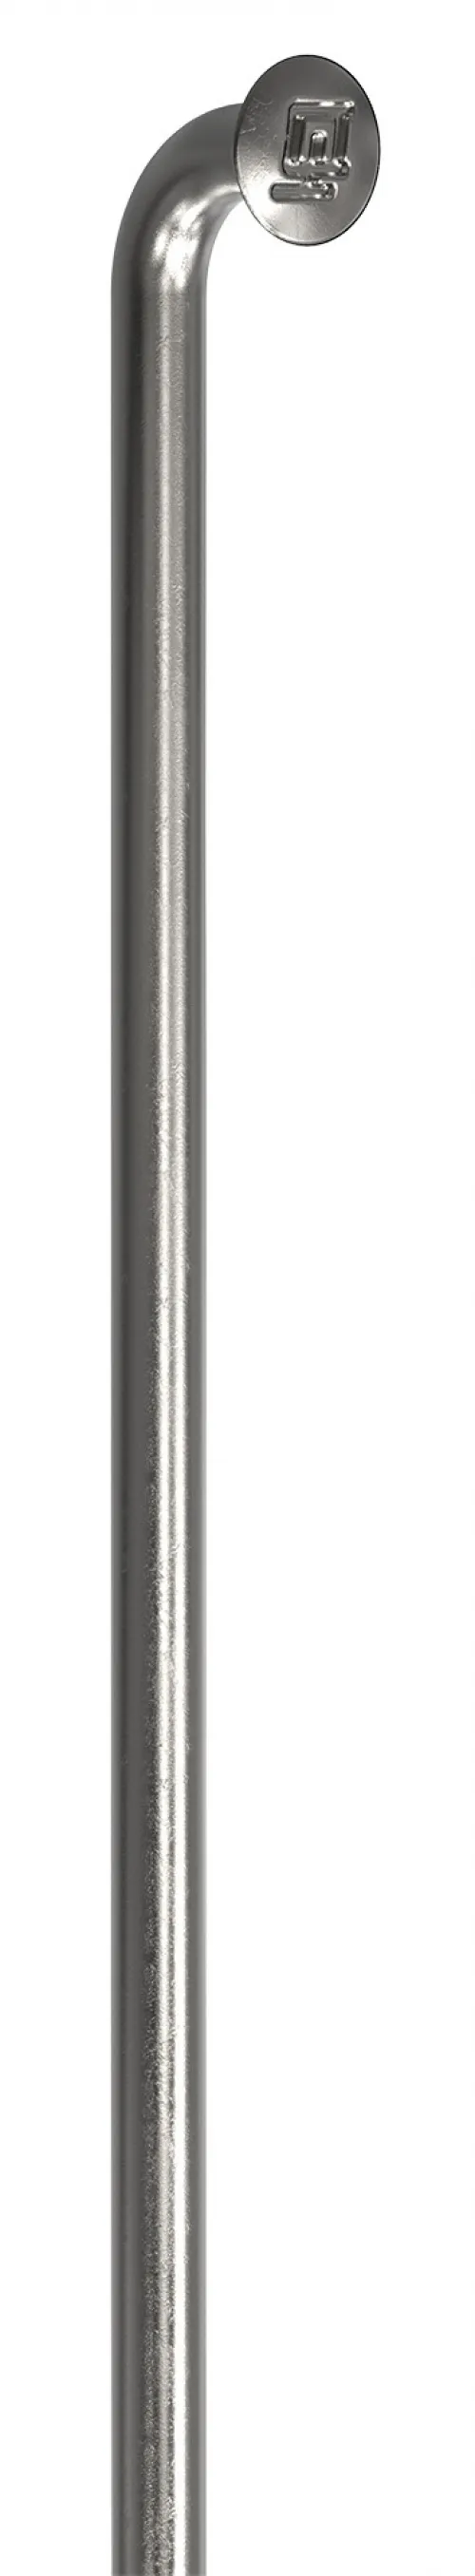 Спицы DT Swiss Champion (J-bend) 2.0mm x 197mm silver 100шт